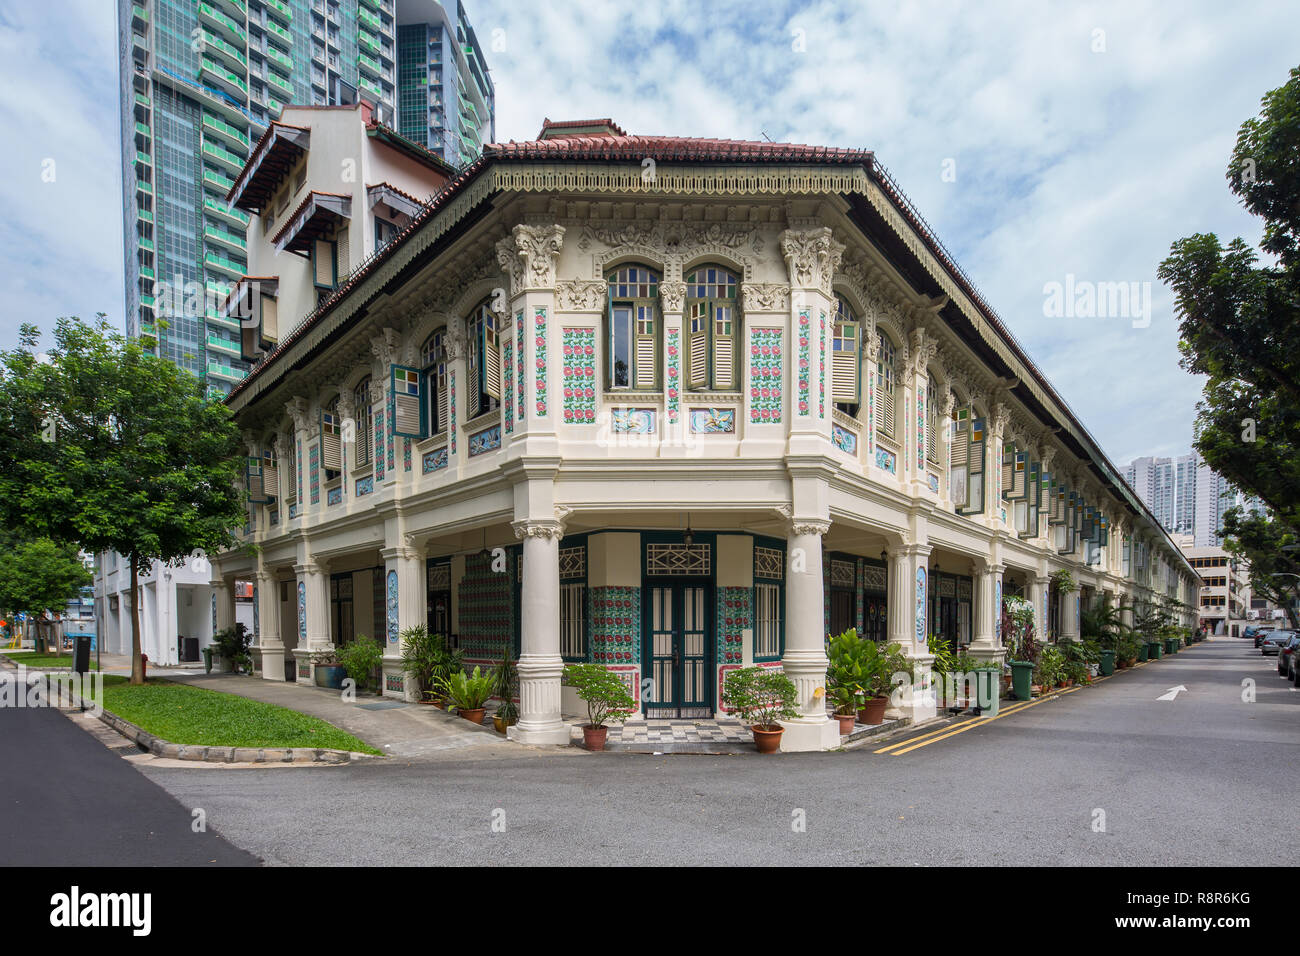 Wunderschön erhaltenen 18 Chinese-Baroque Geschäftshäuser an Petain Road in Singapur gestaltet. Entwurf des britischen Architekten, EV Miller. Stockfoto